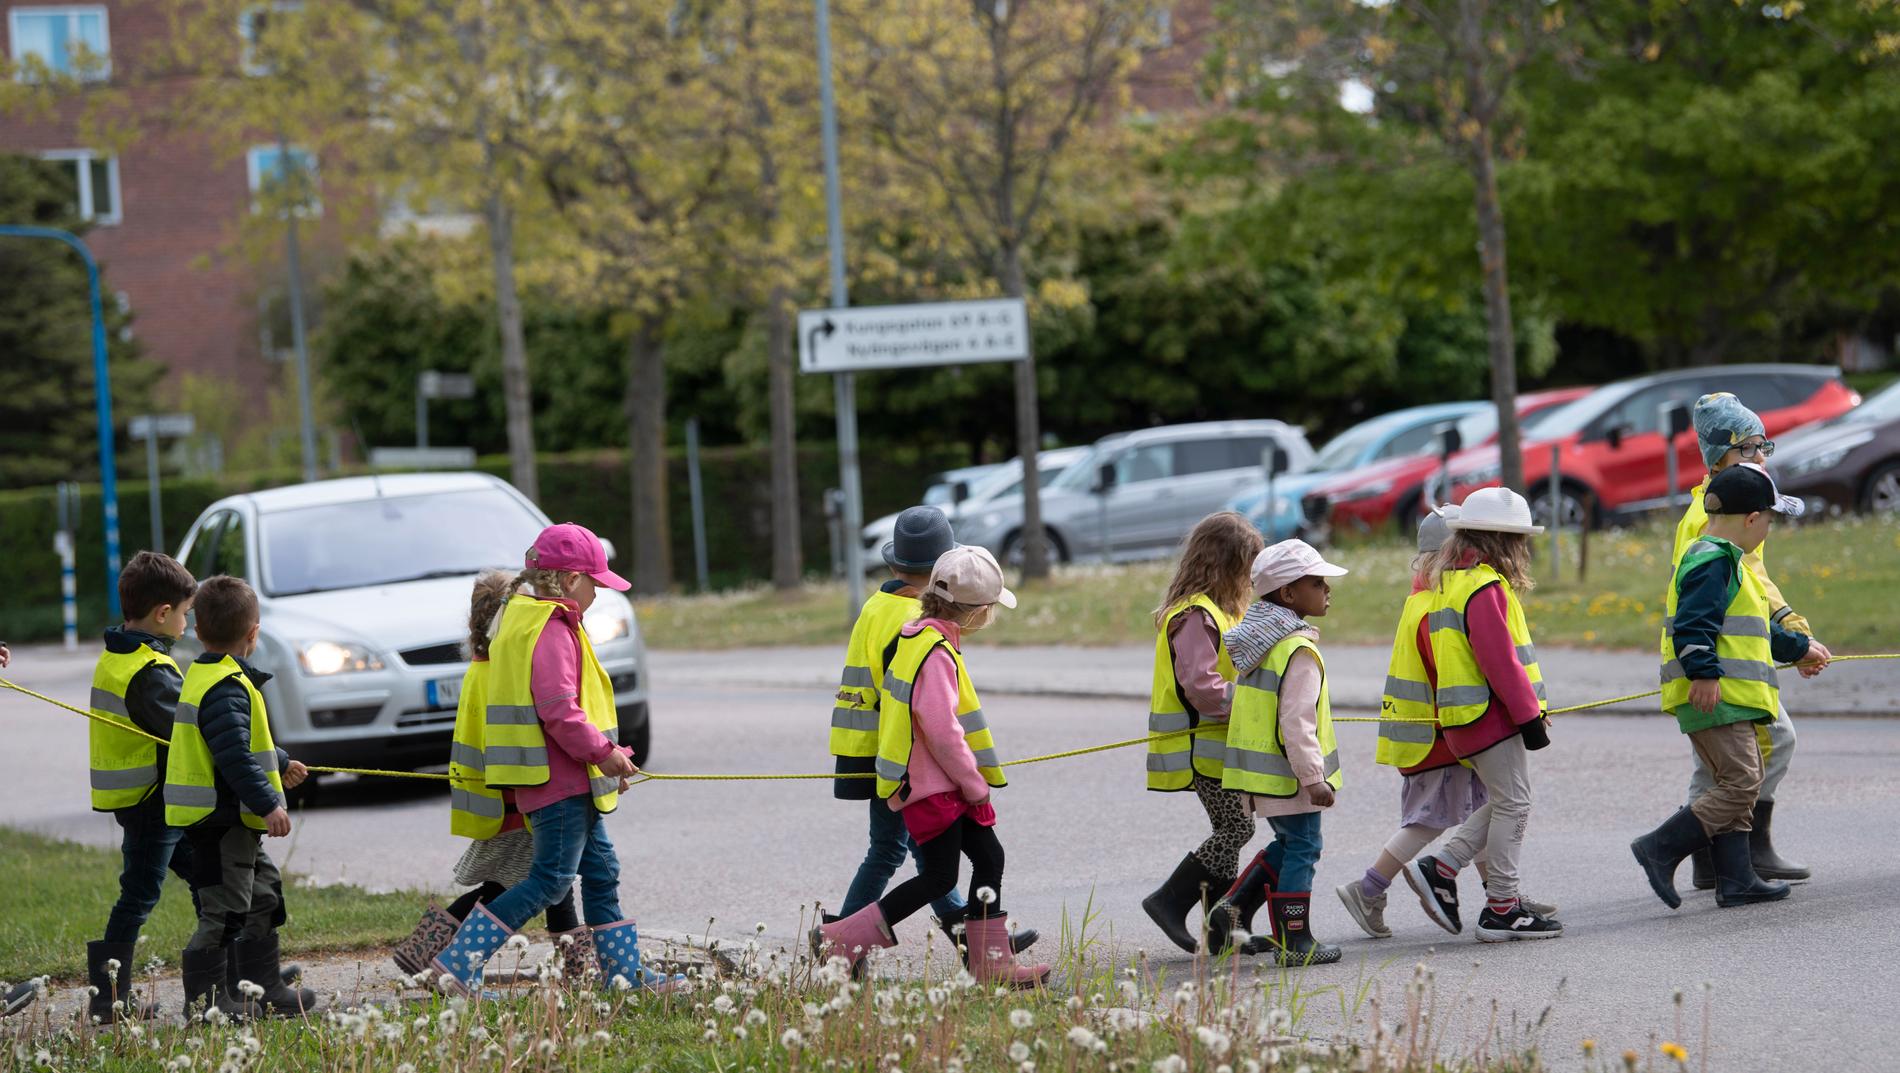 Politiker måste agera mot hederskultur på förskolor. Den uppmaningen kommer från personal på förskolor i Malmö, enligt en ny studie.